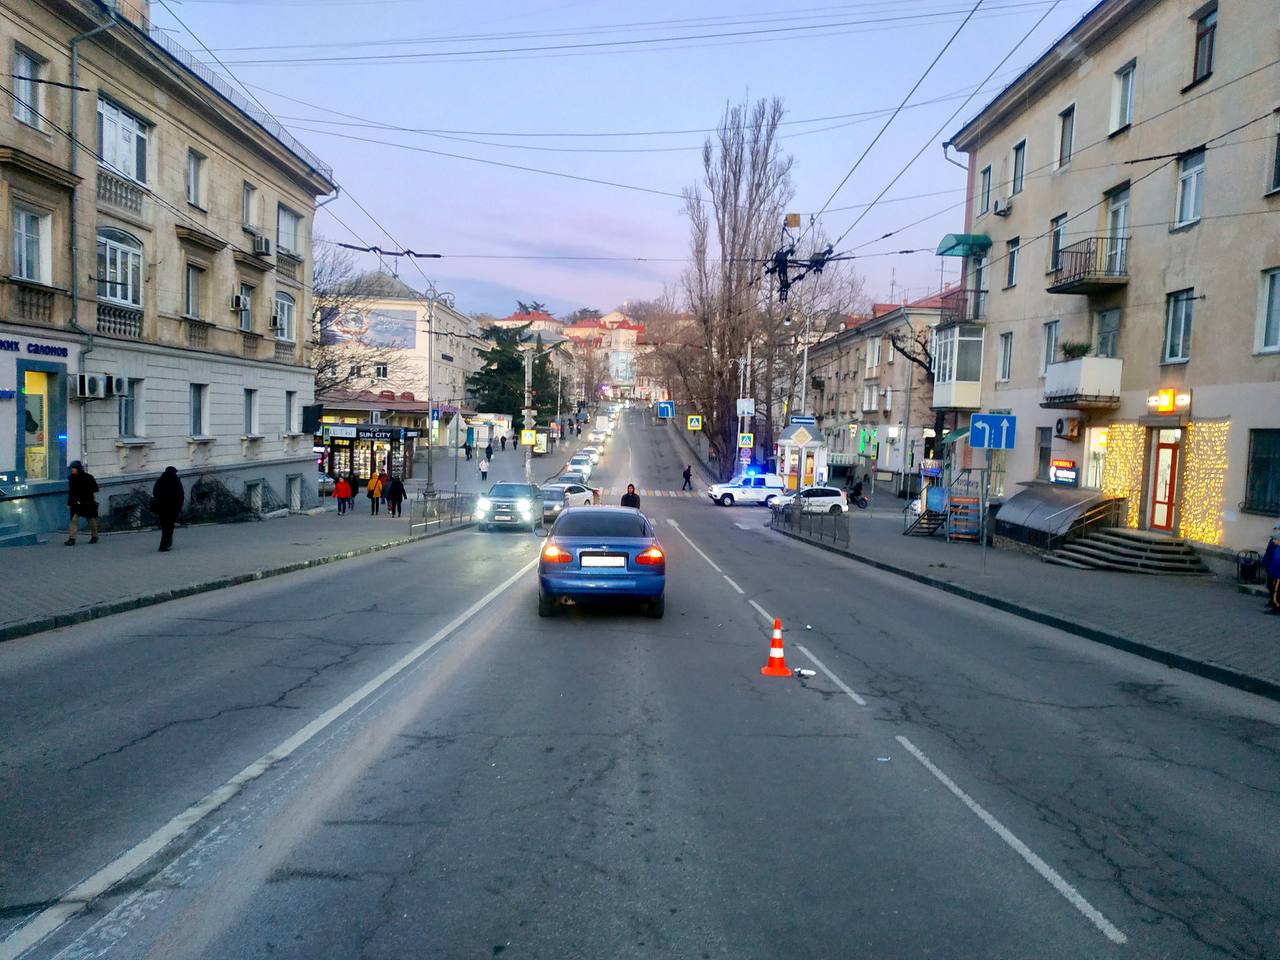 Перебегали дорогу в неположенном месте: в Севастополе сбили двух девушек «под хмельком» (видео)